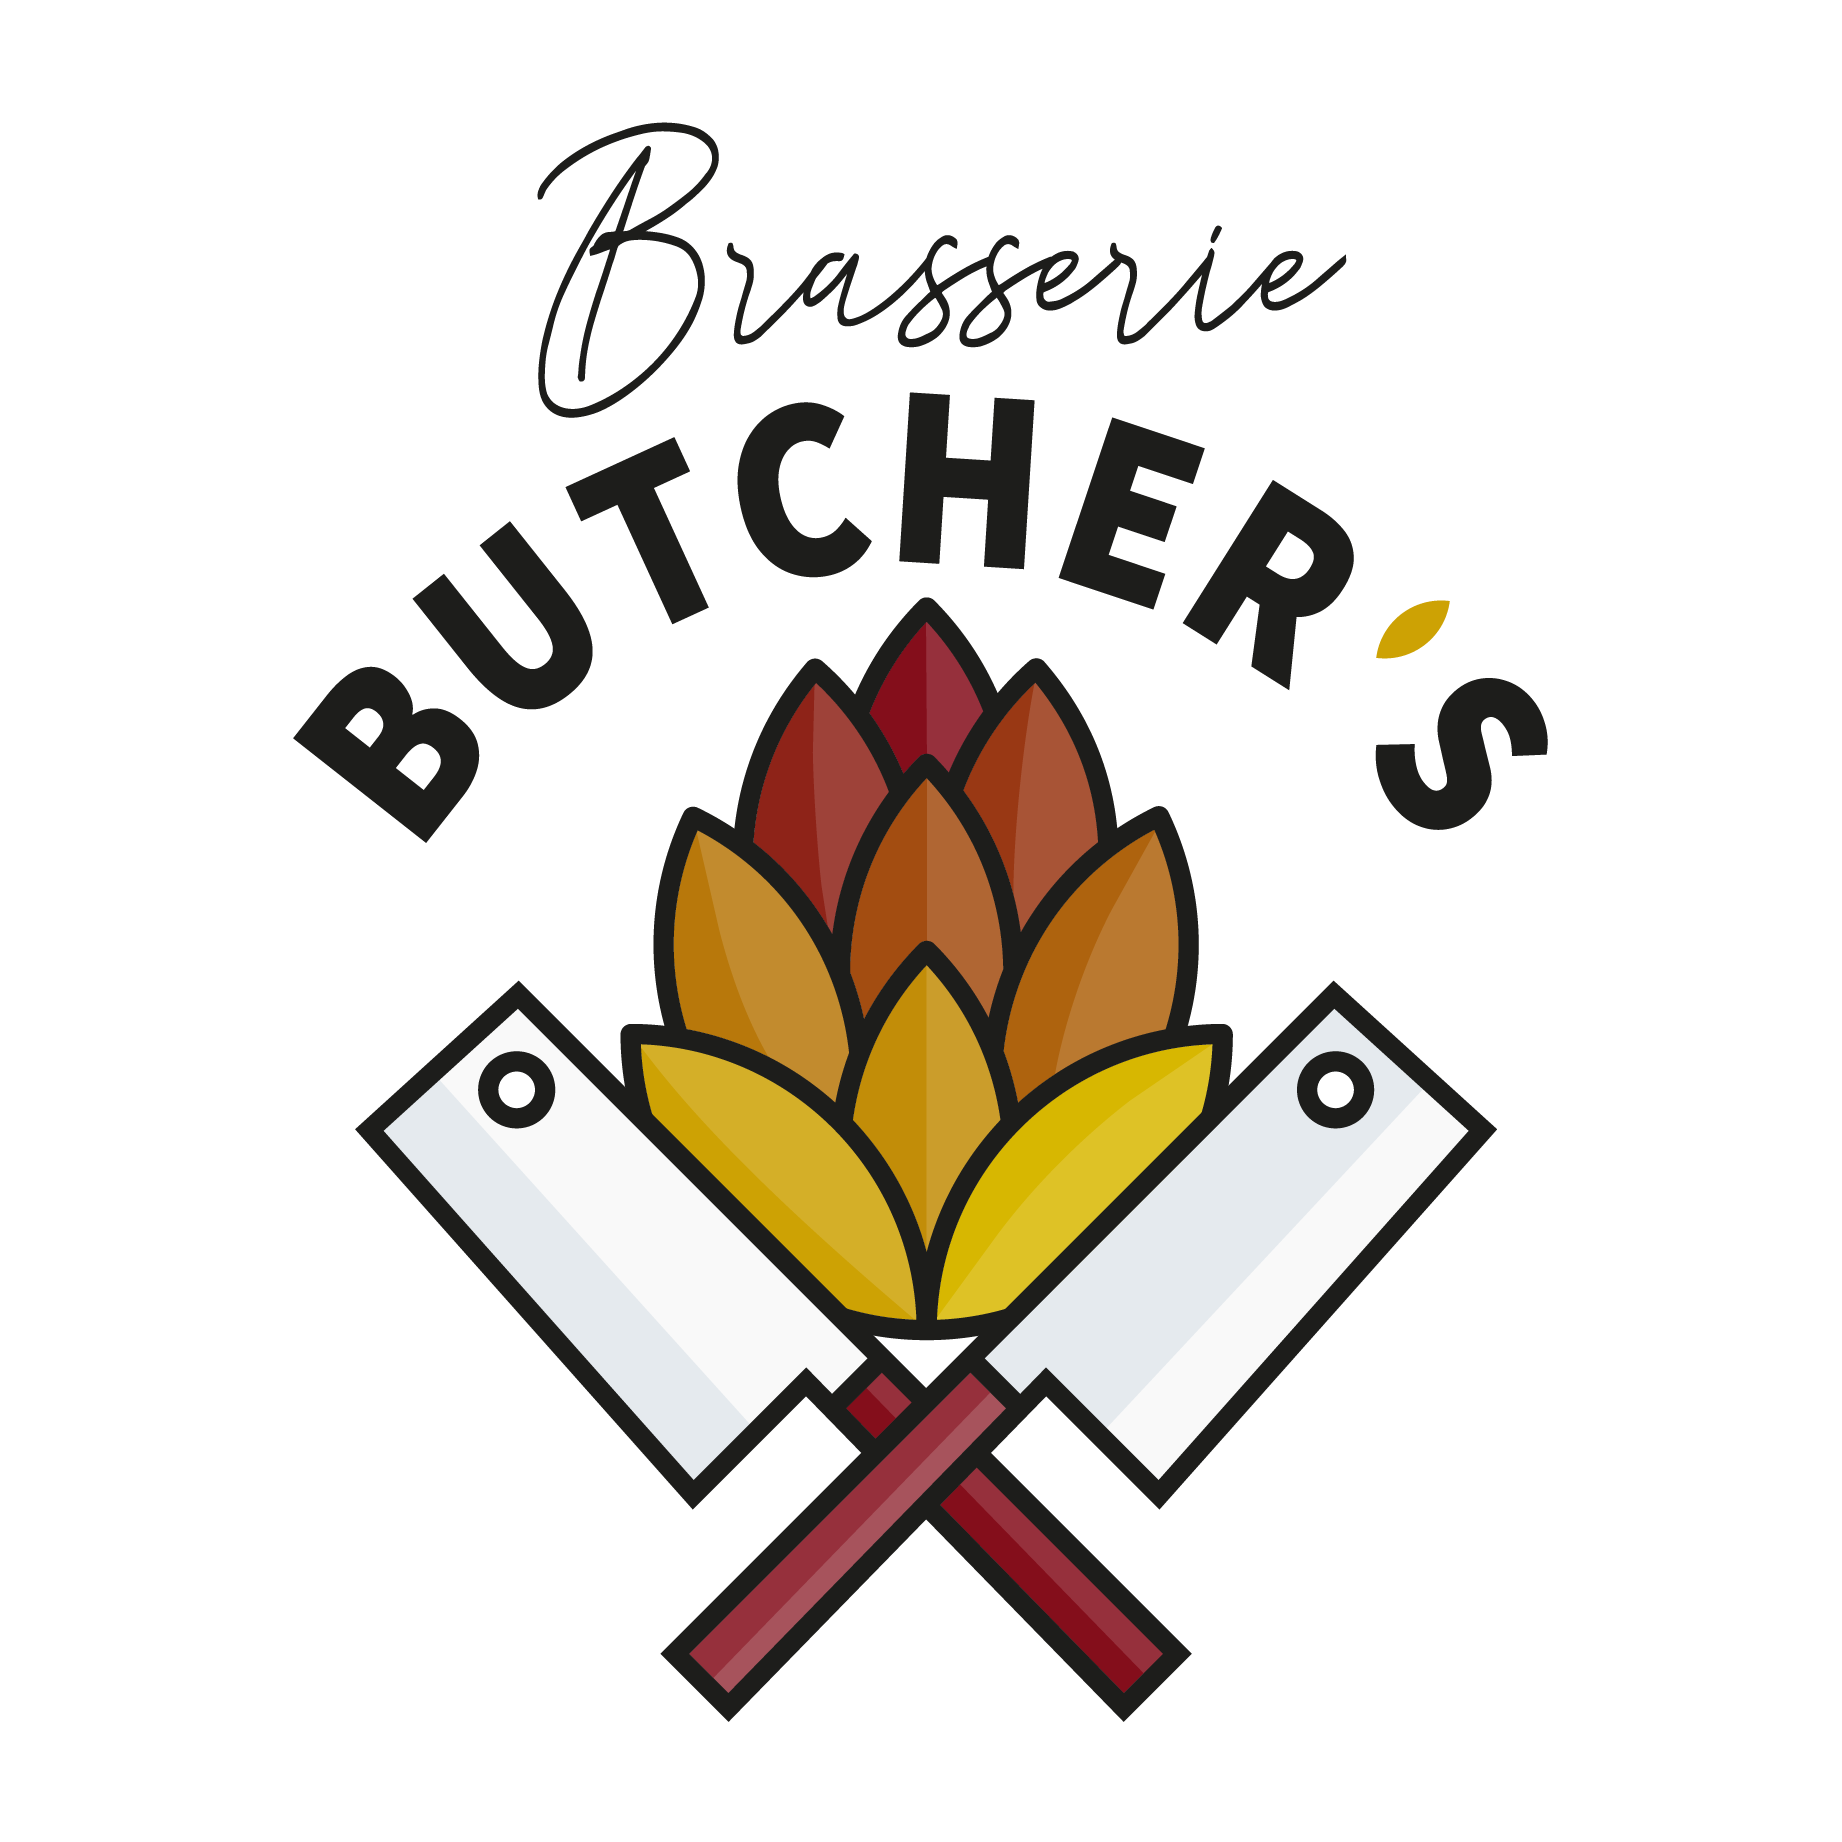 Brasserie BUTCHER's